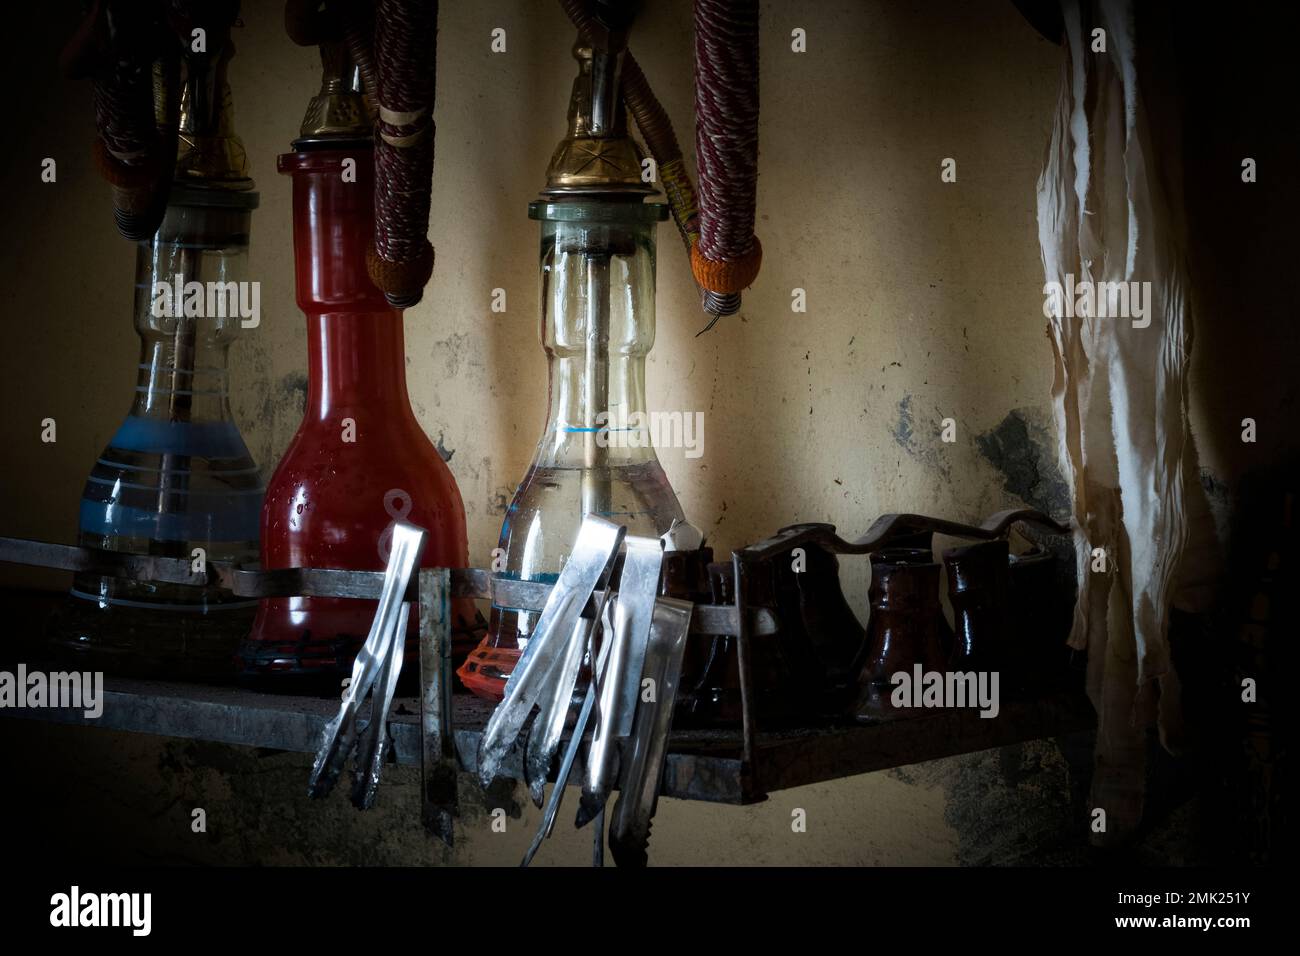 Moody imágenes en un bar Shisha en Egipto Foto de stock